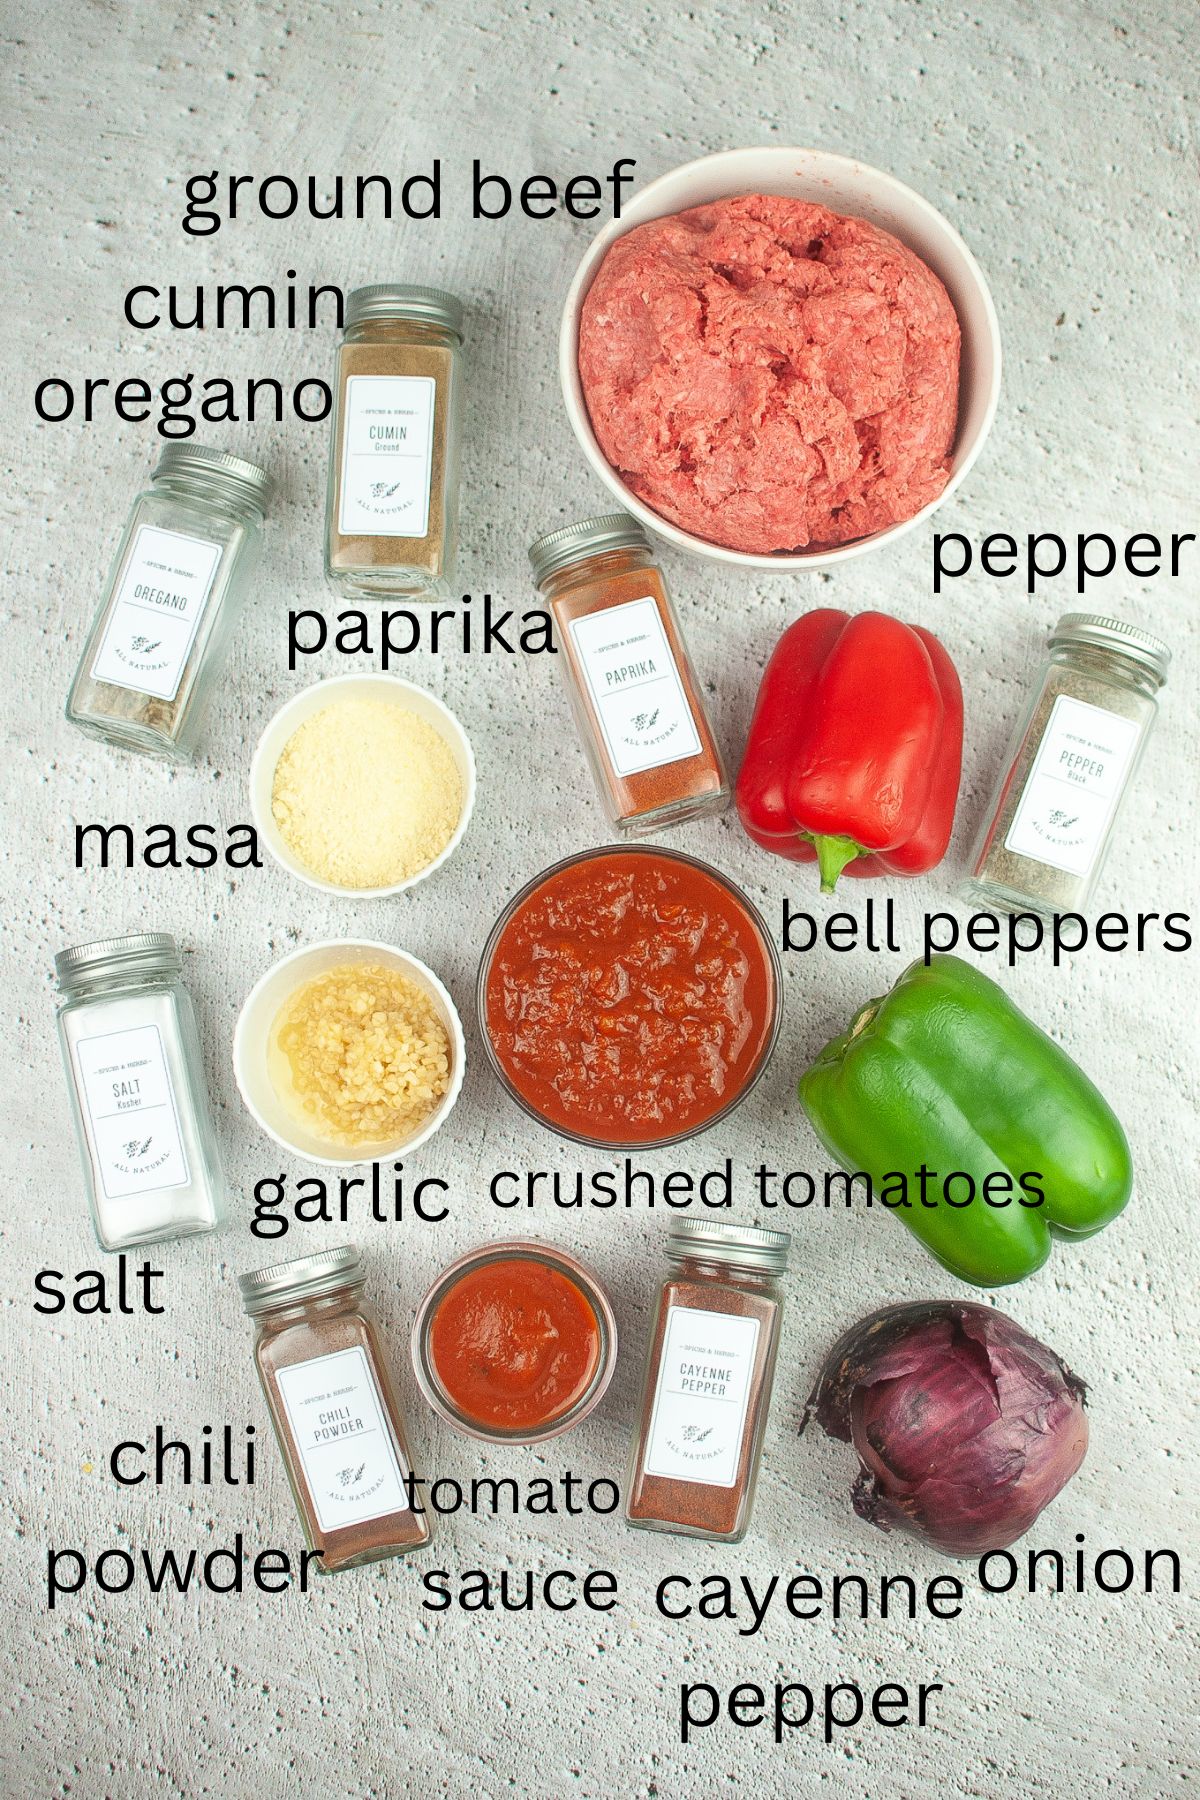 beef, cumin, oregano, pepper, paprika, bell peppers, garli, masa, slat, chili powder, tomato sauce, crushed tomatoes, cayenne pepper, and onions